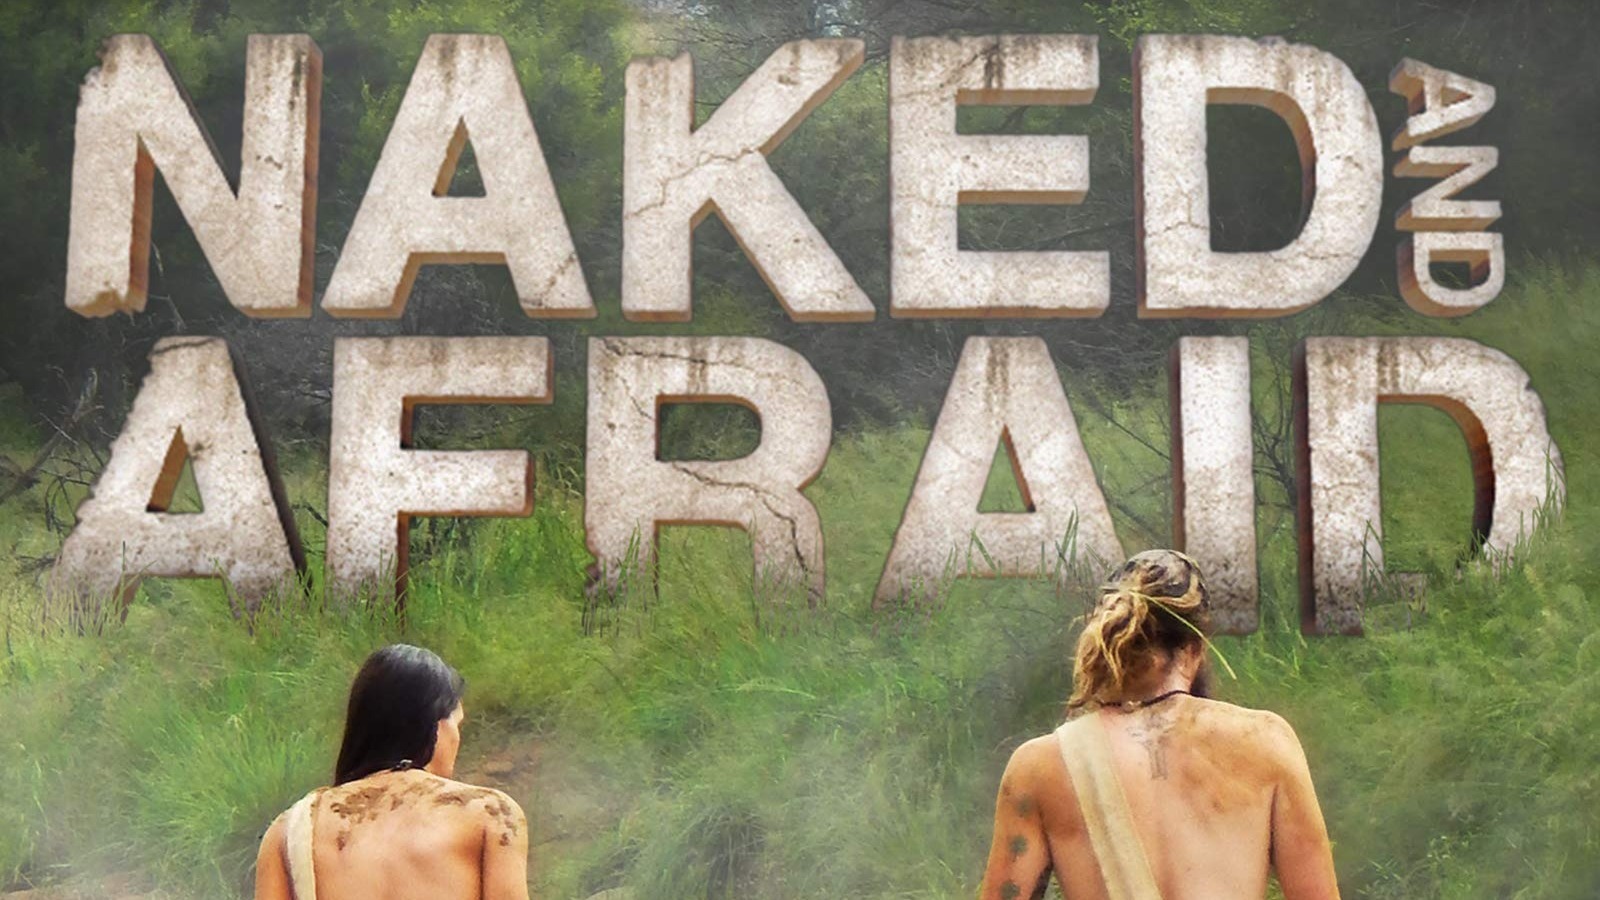 Naked and afraid season 14 episodes